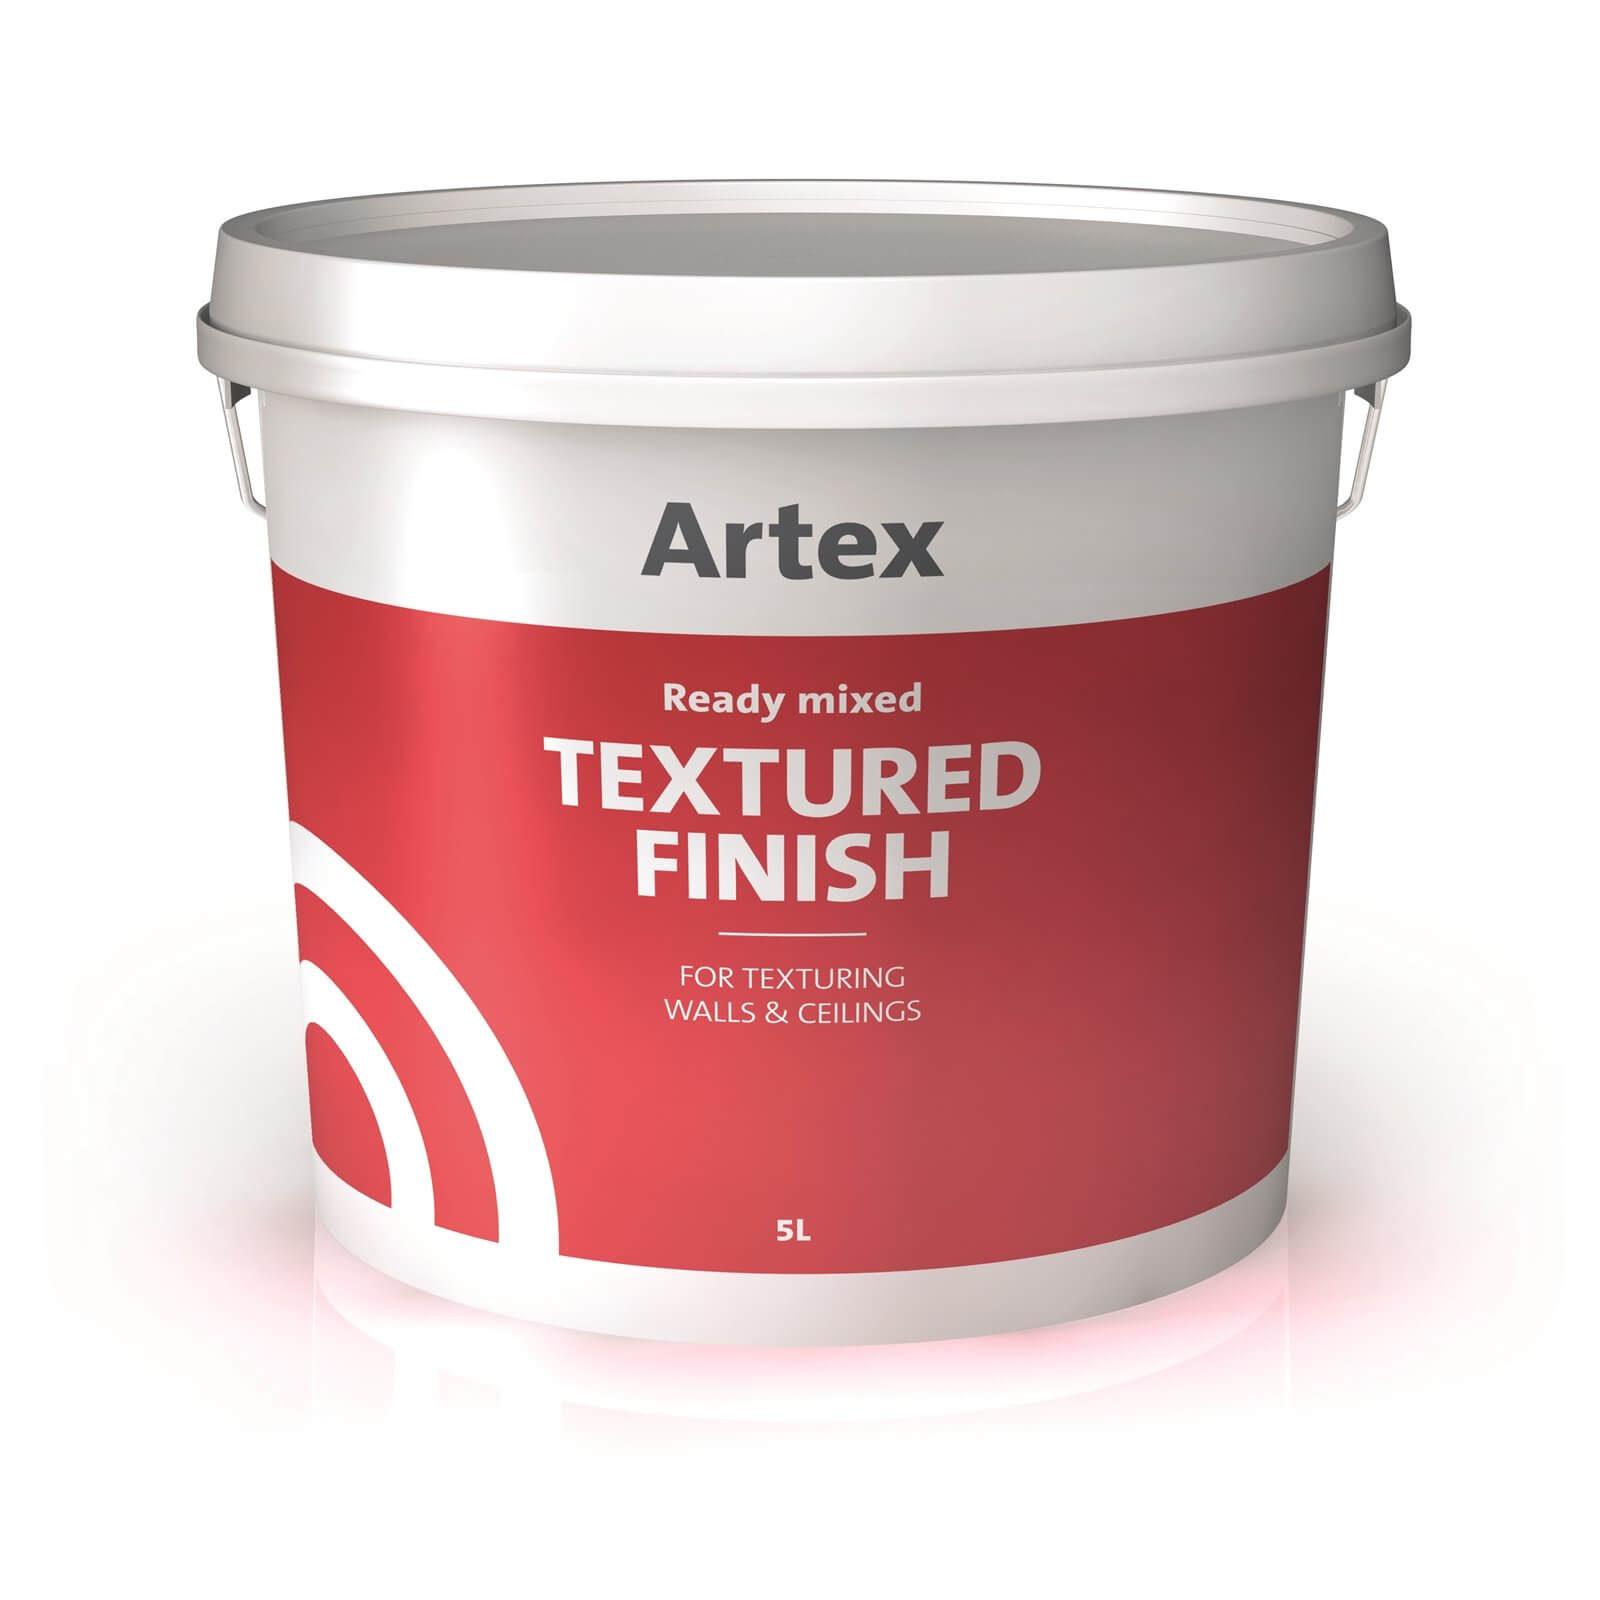 Artex Ready Mixed Textured Finish - 5L